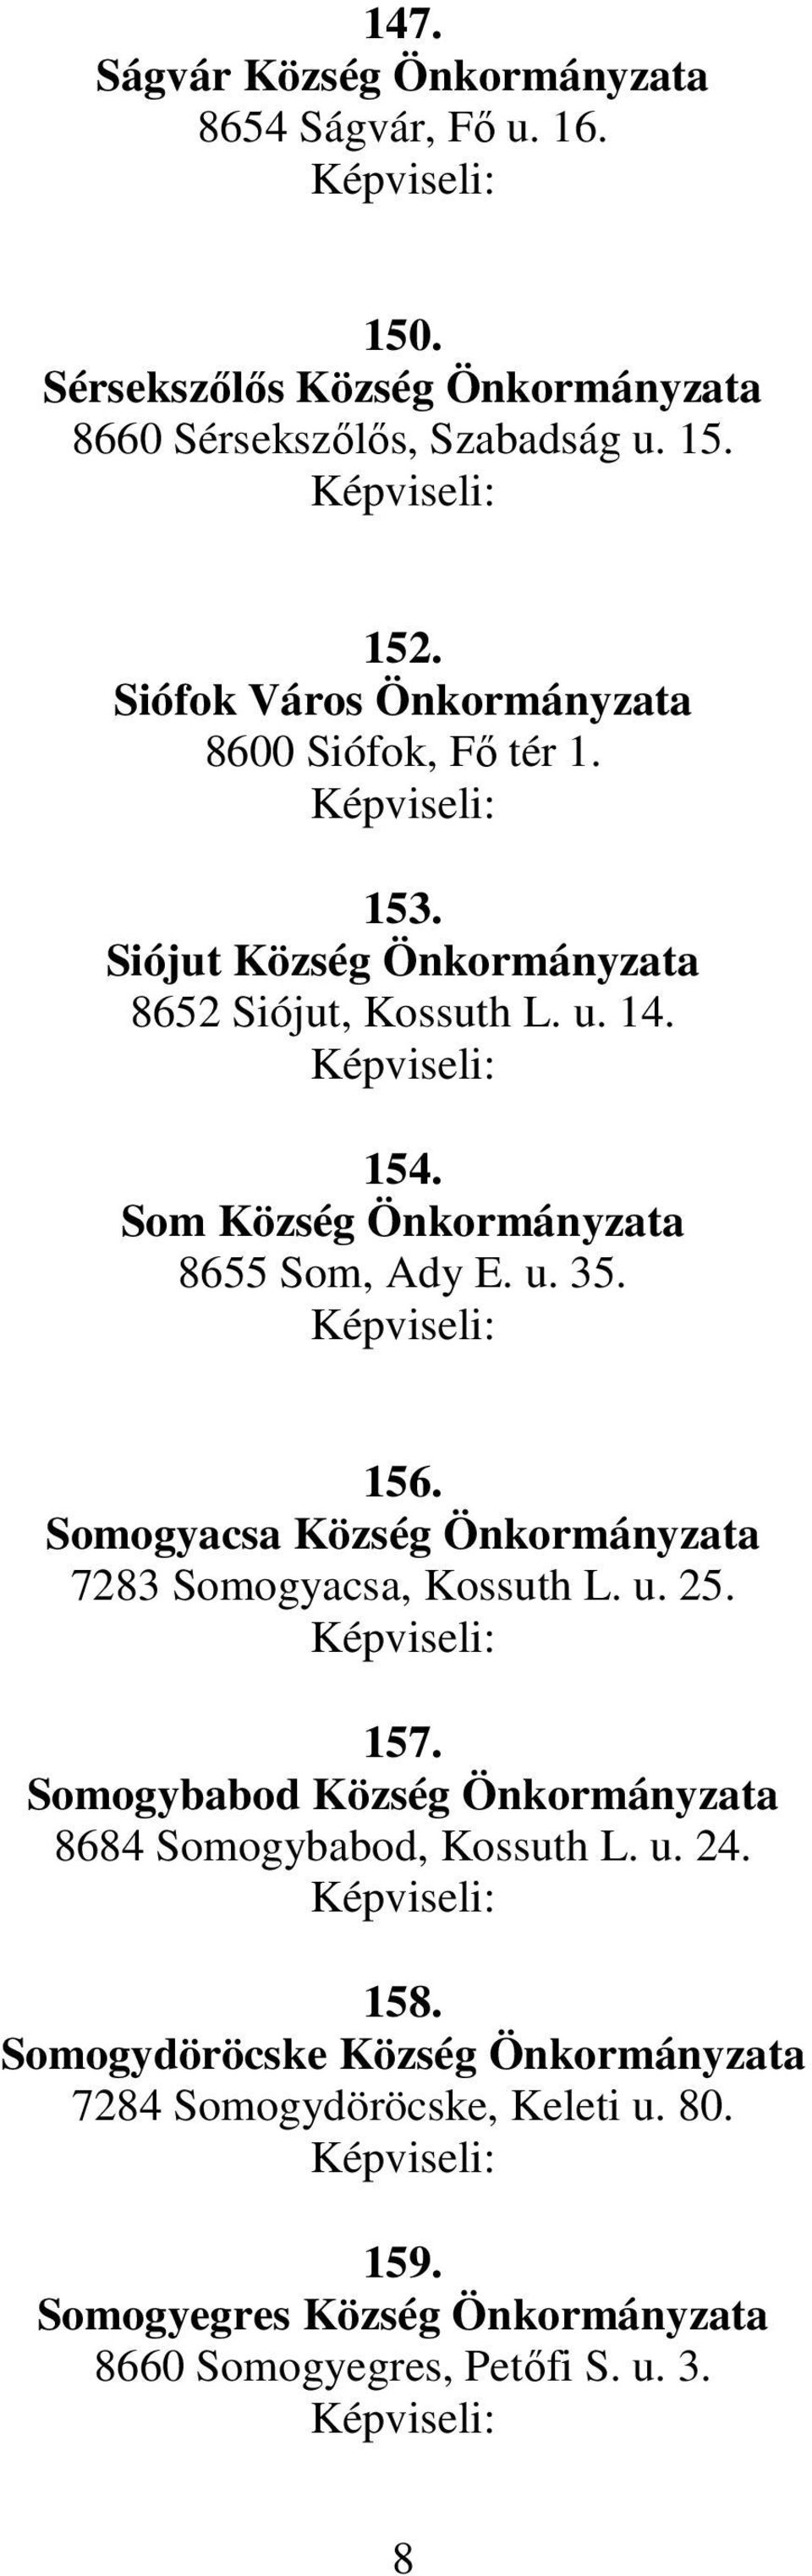 Som Község Önkormányzata 8655 Som, Ady E. u. 35. 156. Somogyacsa Község Önkormányzata 7283 Somogyacsa, Kossuth L. u. 25. 157.